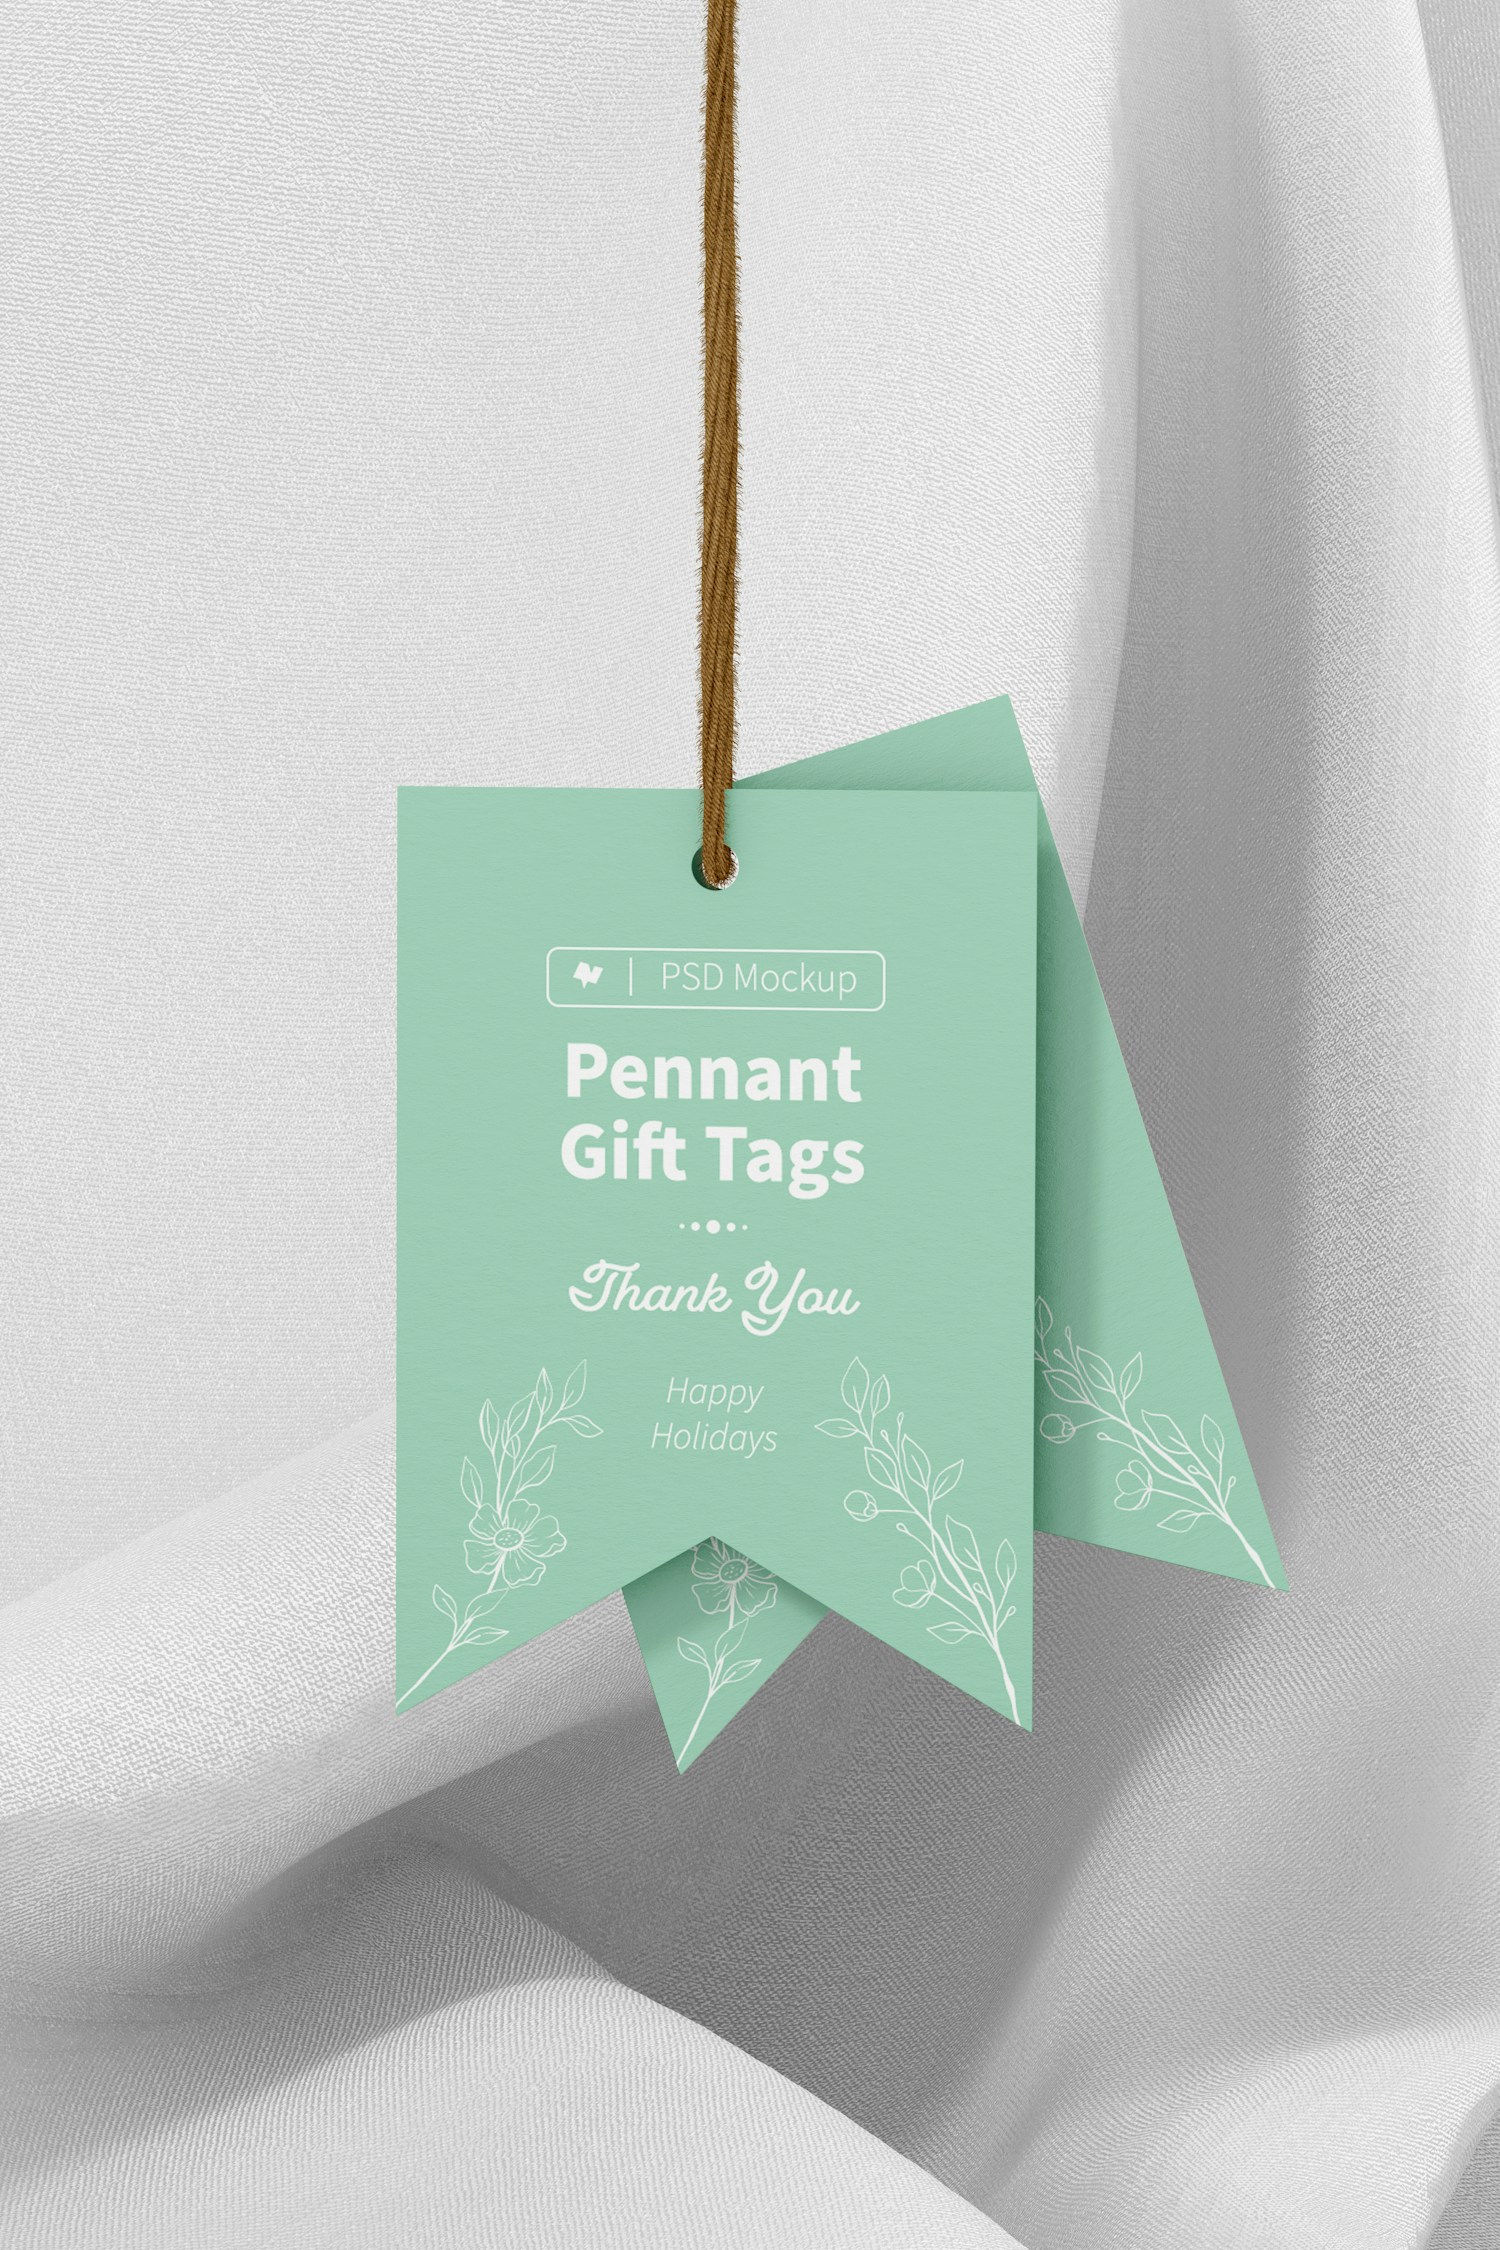 Pennant Gift Tags Mockup, Hanging